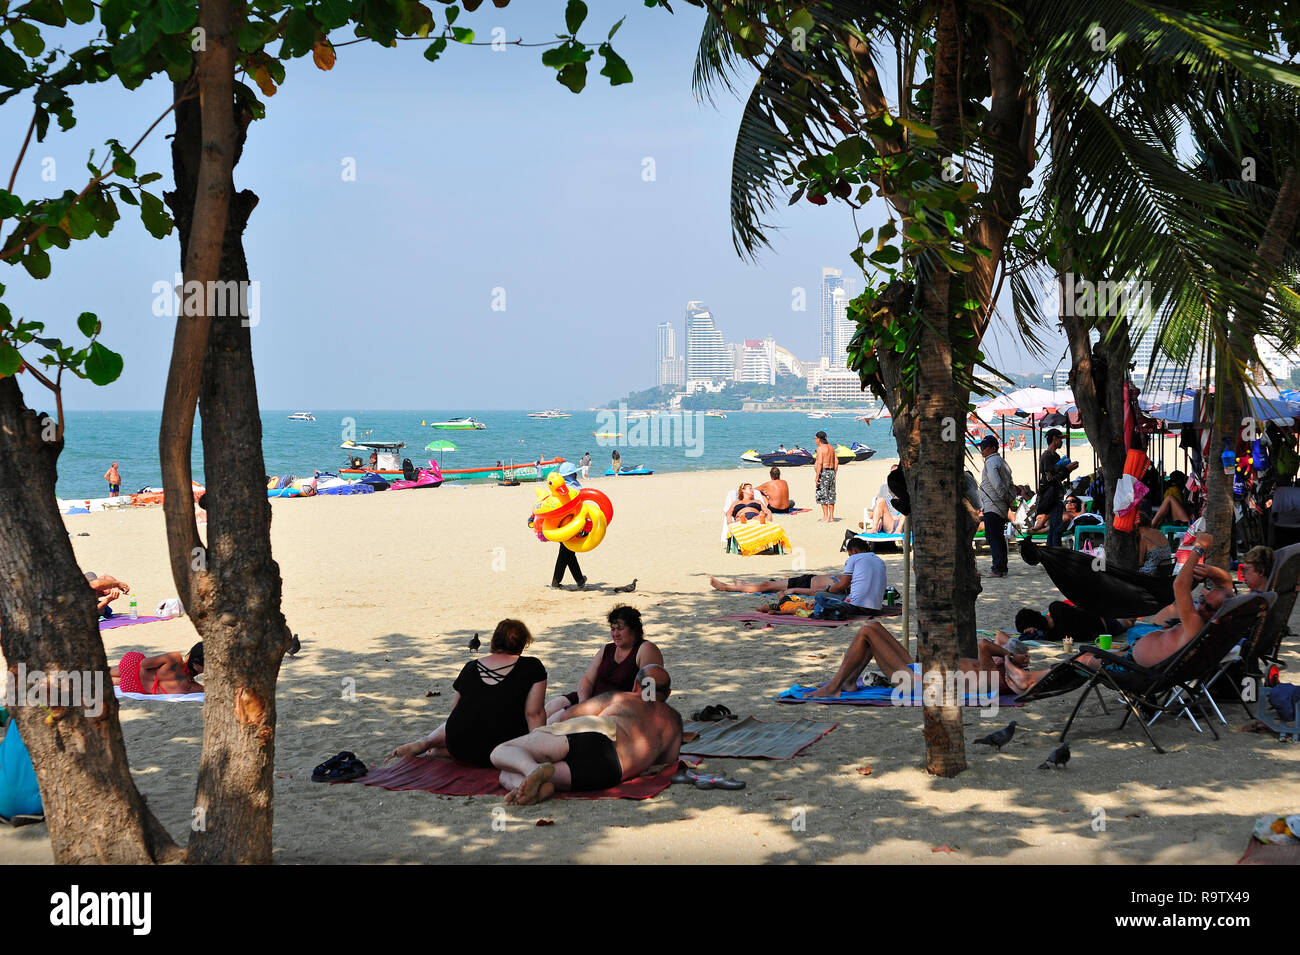 Les touristes et les habitants sur Pattaya Beach Thaïlande Asie du sud-est Banque D'Images